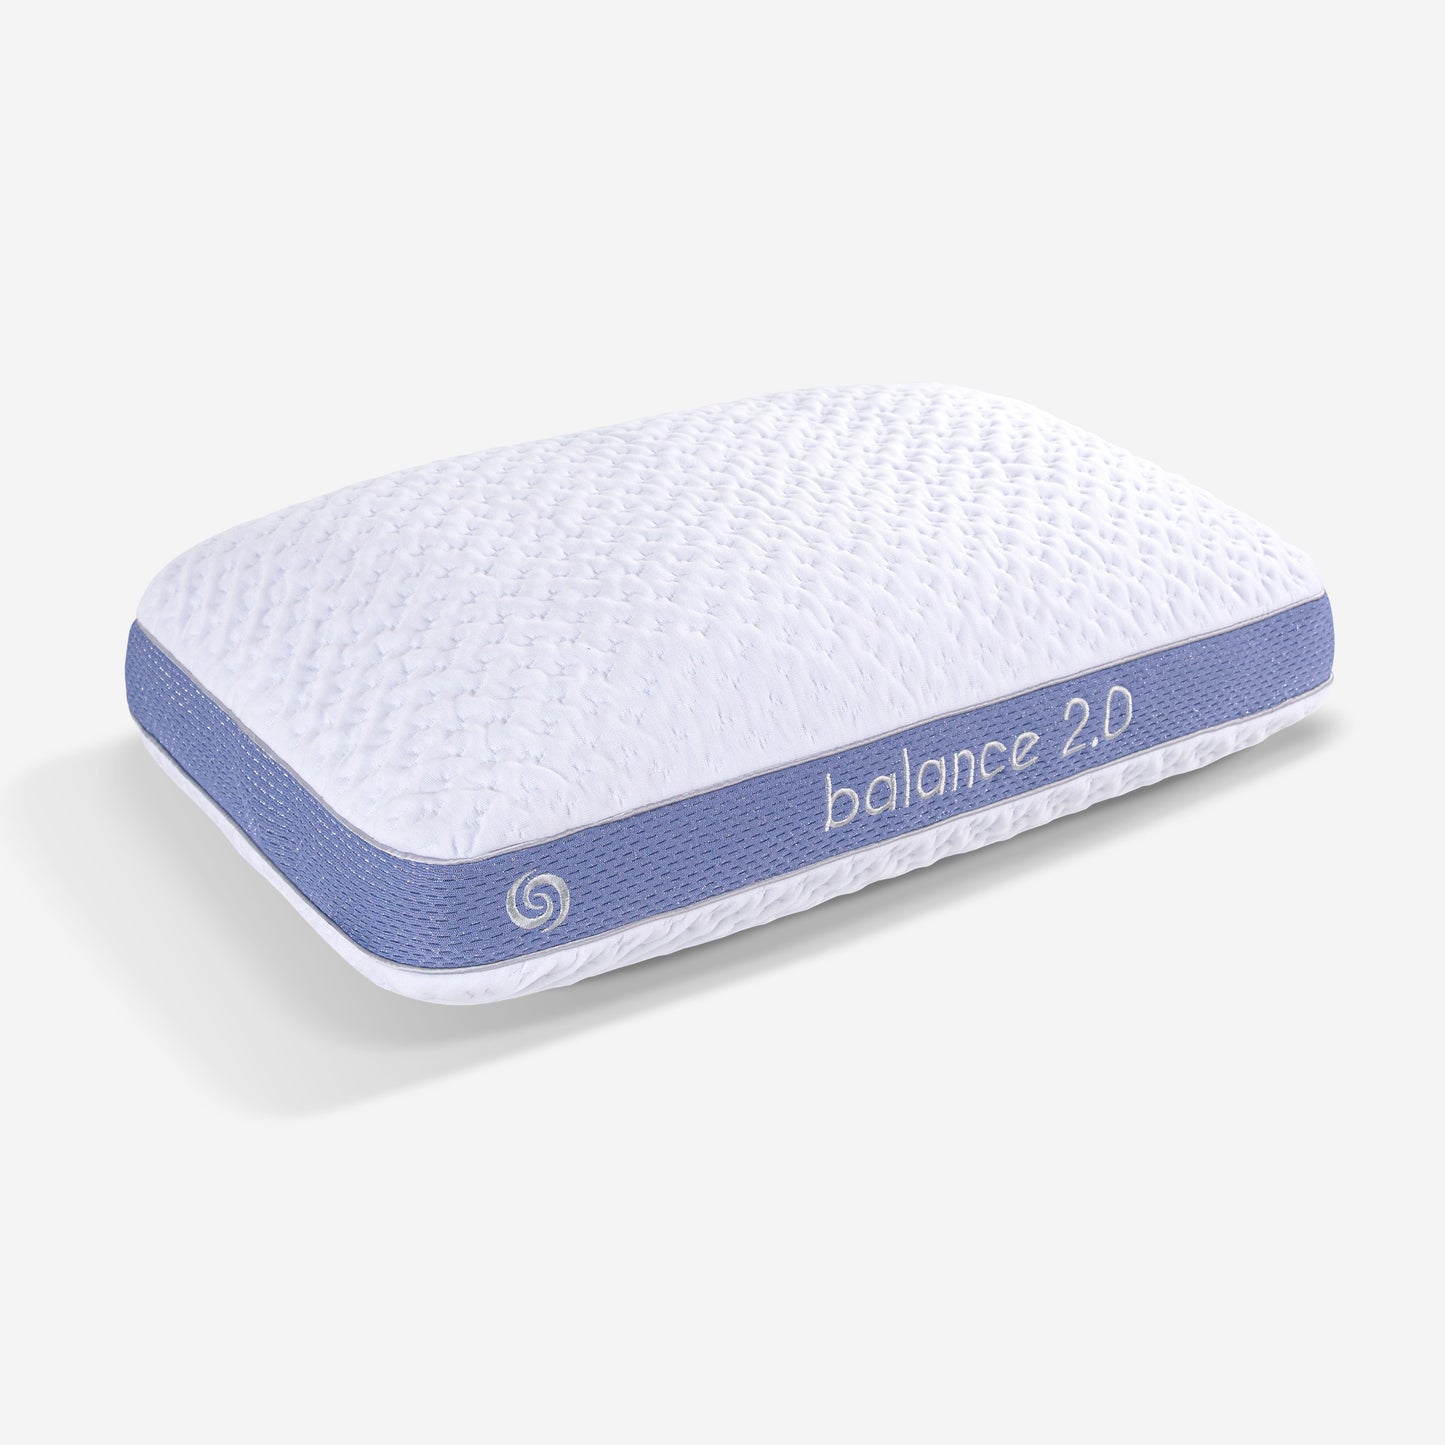 Bedgear Balance Performance Pillow 2.0